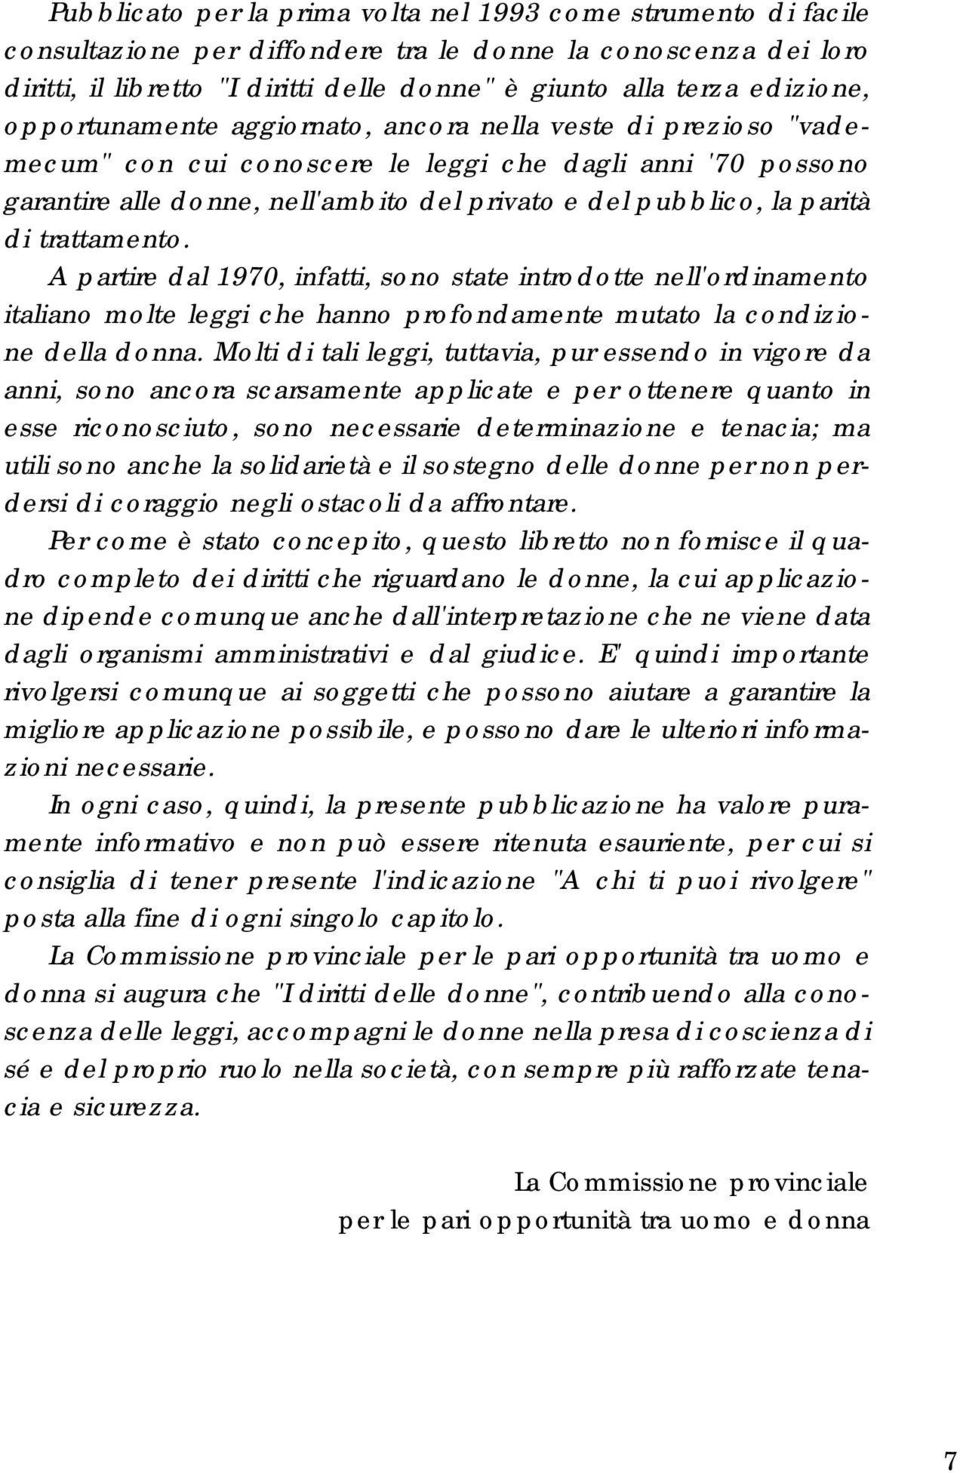 parità di trattamento. A partire dal 1970, infatti, sono state introdotte nell'ordinamento italiano molte leggi che hanno profondamente mutato la condizione della donna.